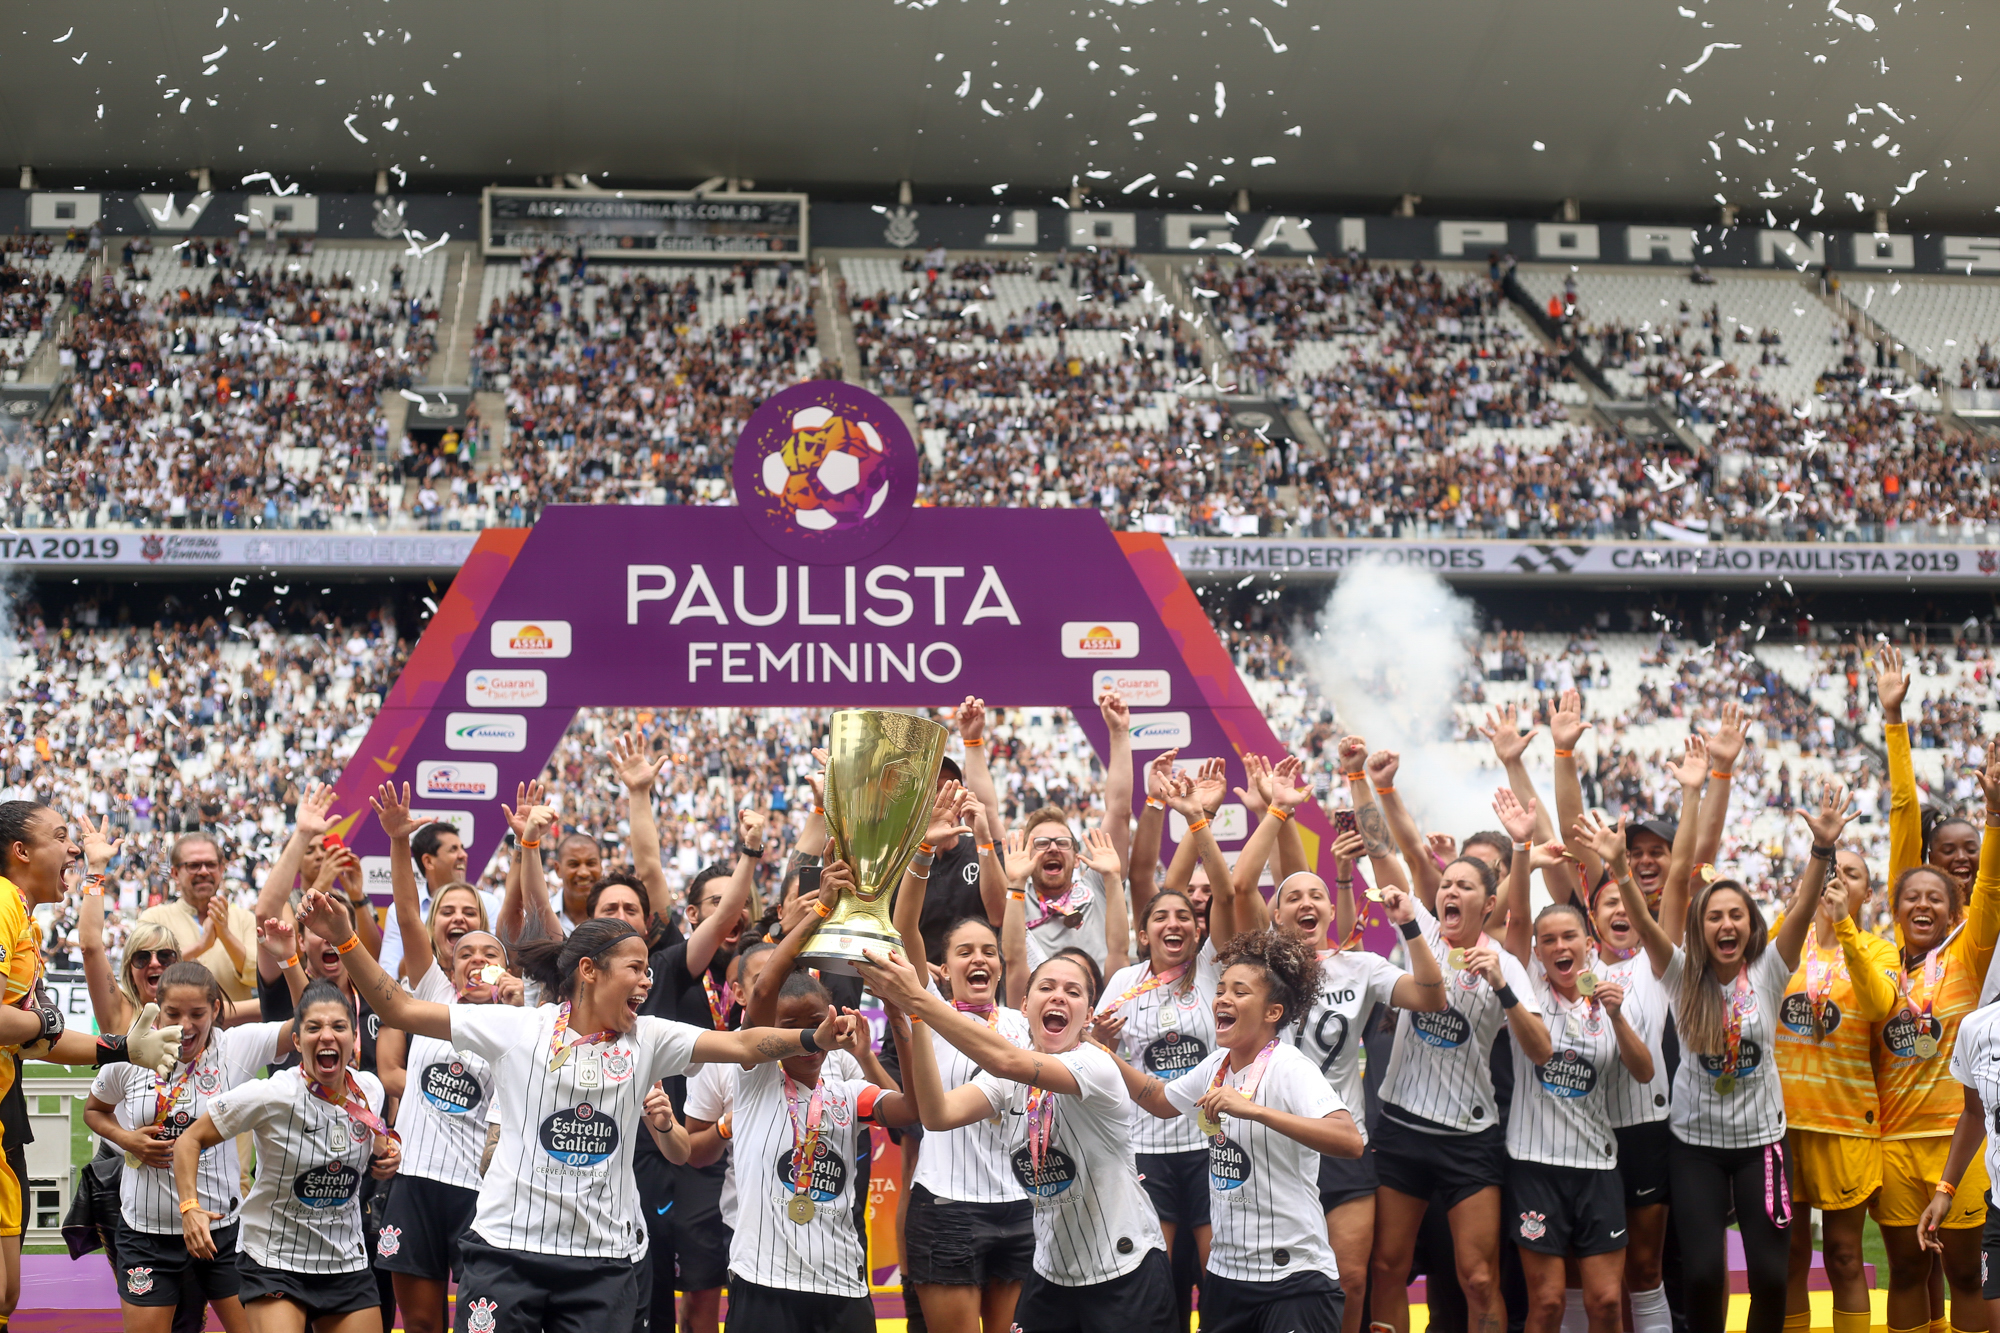 Atual campeão, o Corinthians estreia no Paulista Feminino neste domingo -  Central do Timão - Notícias do Corinthians